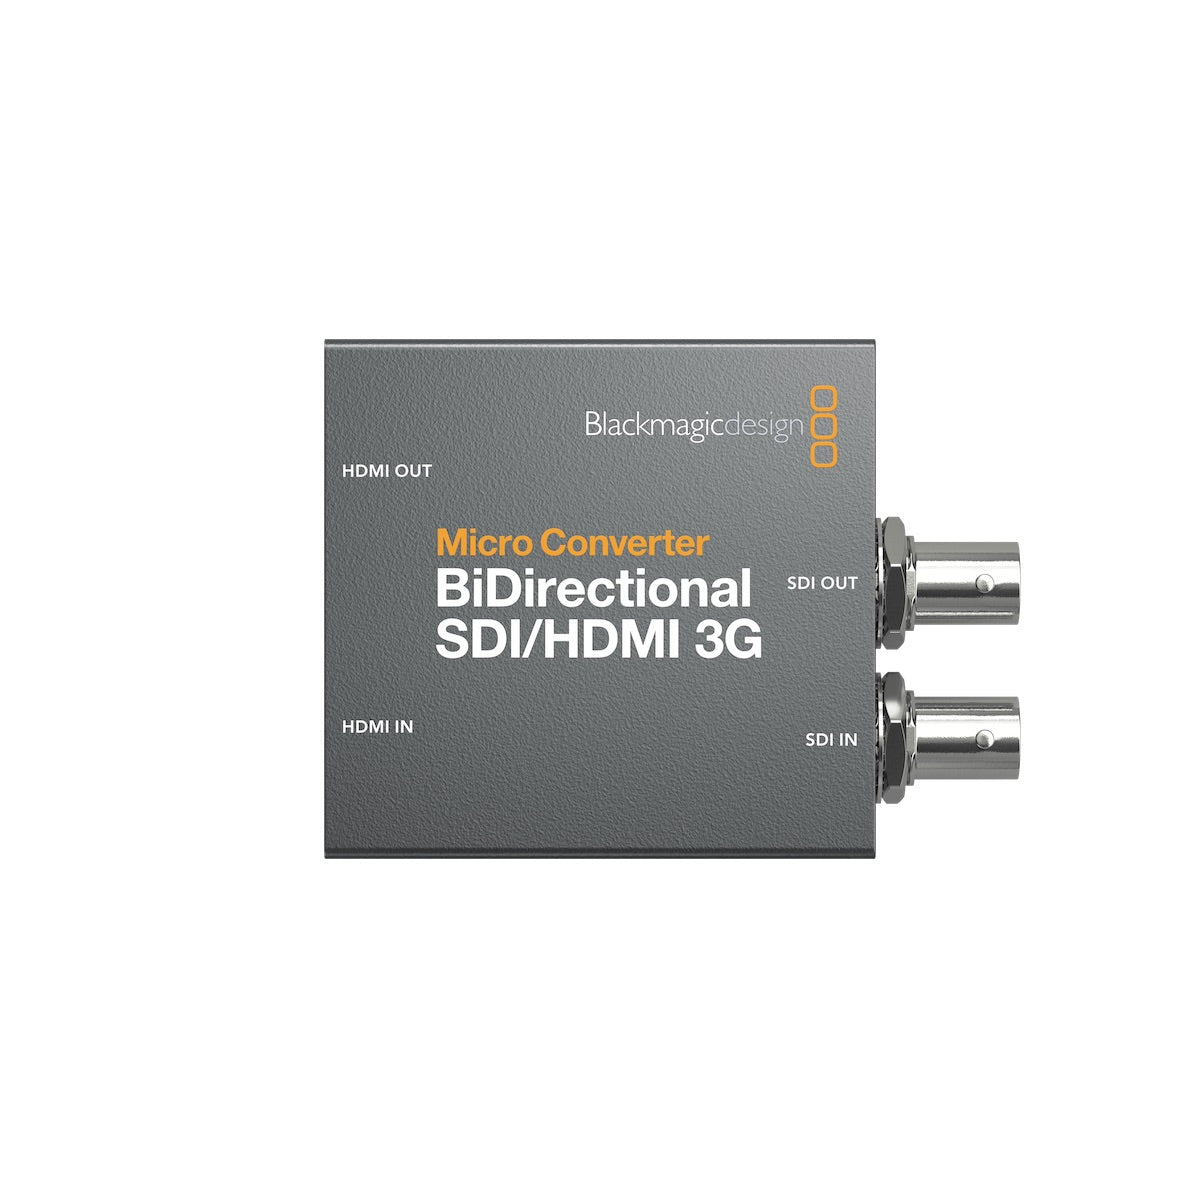 Blackmagic Micro Converter - BiDirectional SDI/HDMI 3G, top